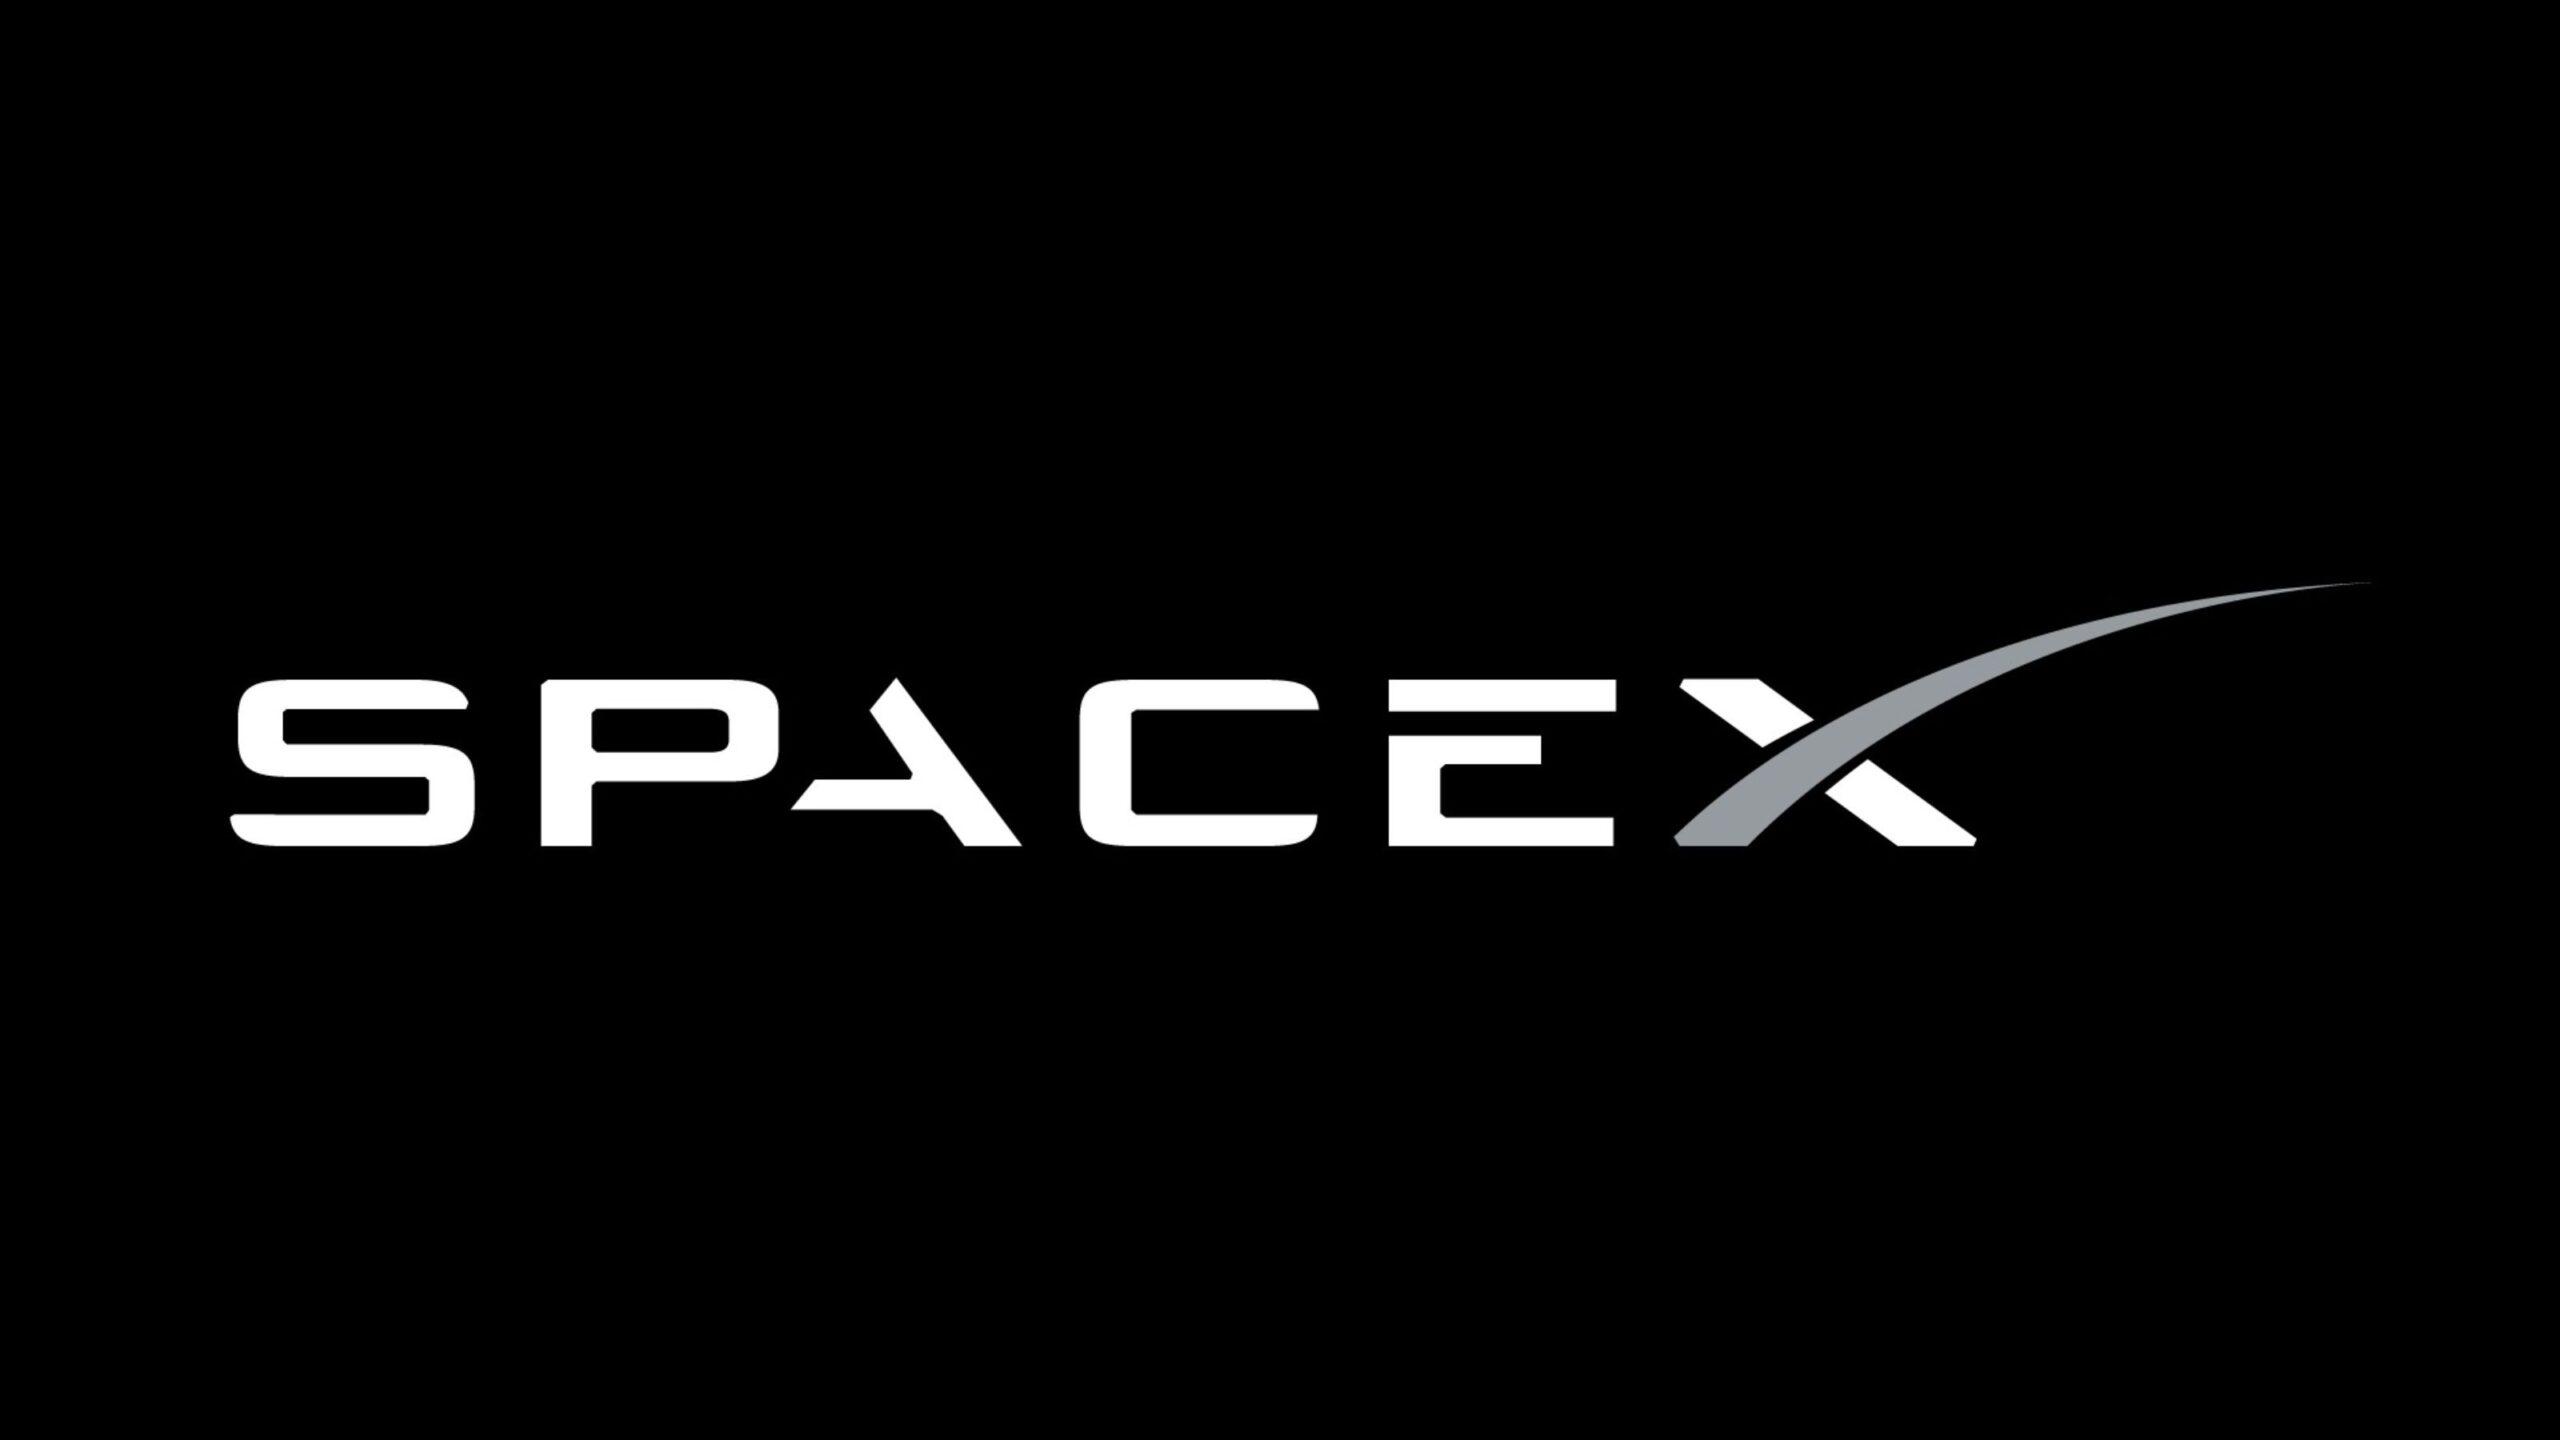 طموح استعمار الفضاء: SpaceX هي الرائدة حتى الآن 8